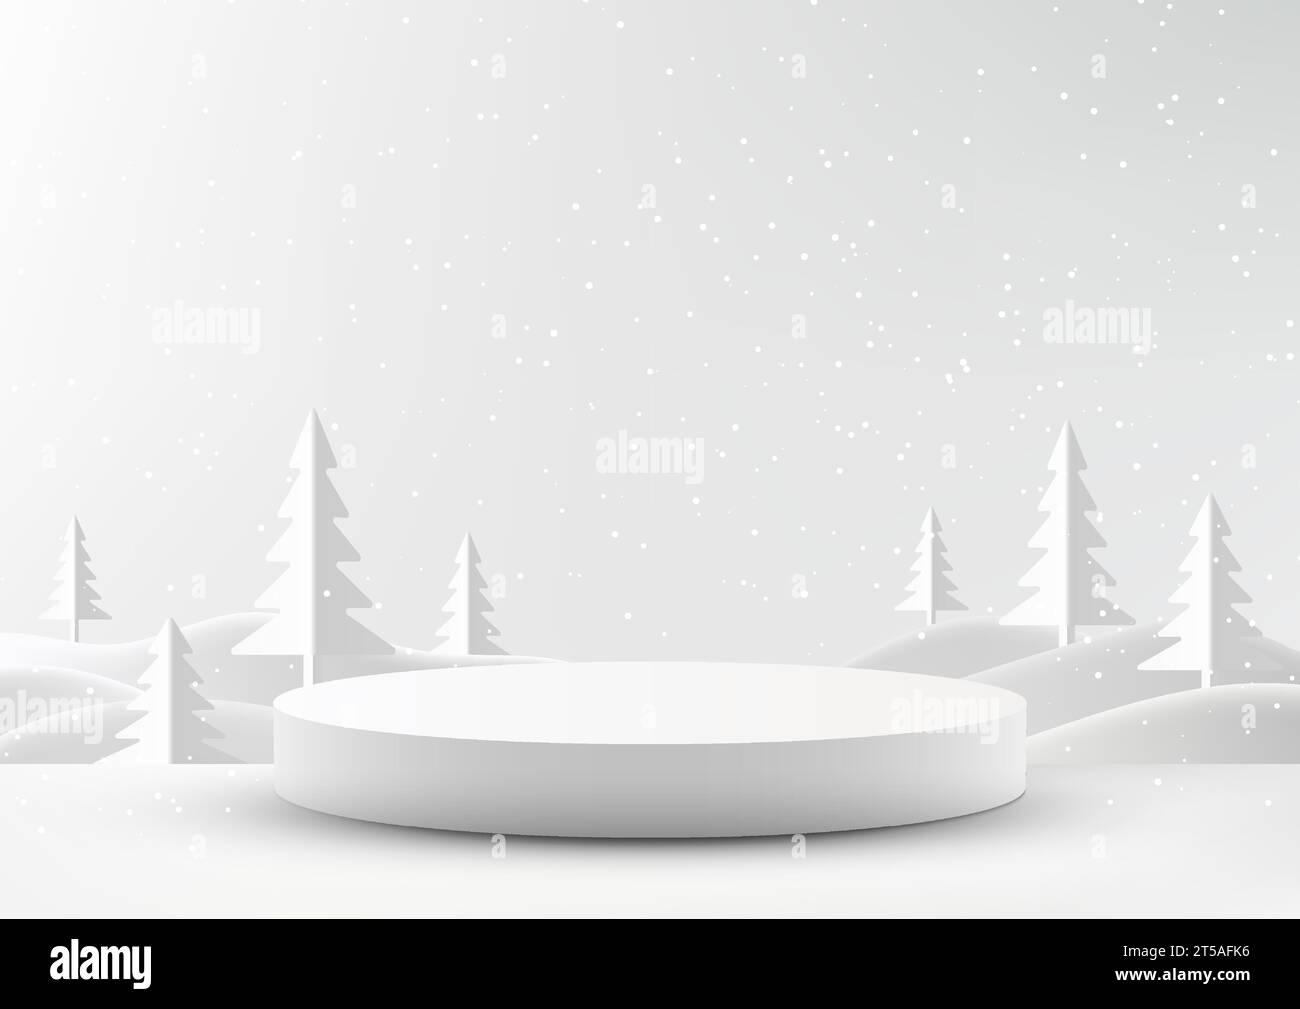 Präsentieren Sie Ihre Produkte stilvoll mit diesem minimalen Mockup zu Weihnachtsartikeln. Mit weißem Podium und schneebedecktem Hintergrund. Vektor krank Stock Vektor